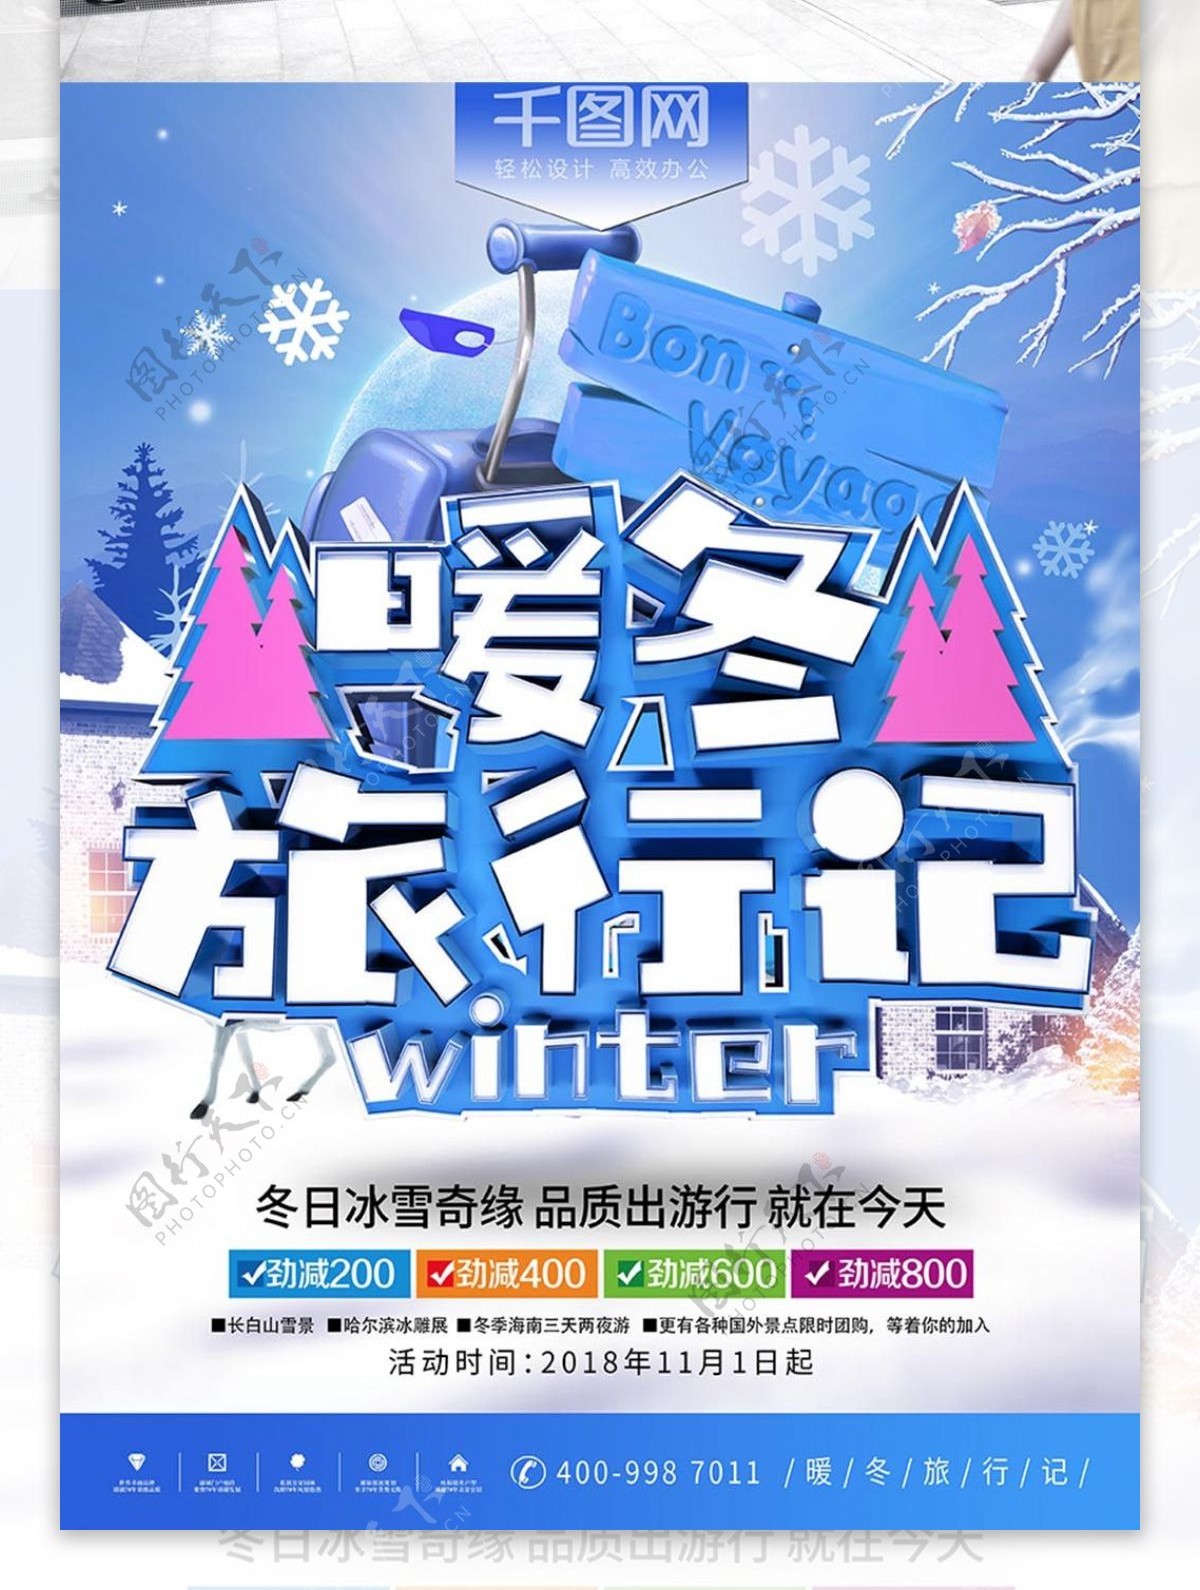 2018暖冬旅游蓝色寒假旅行宣传海报